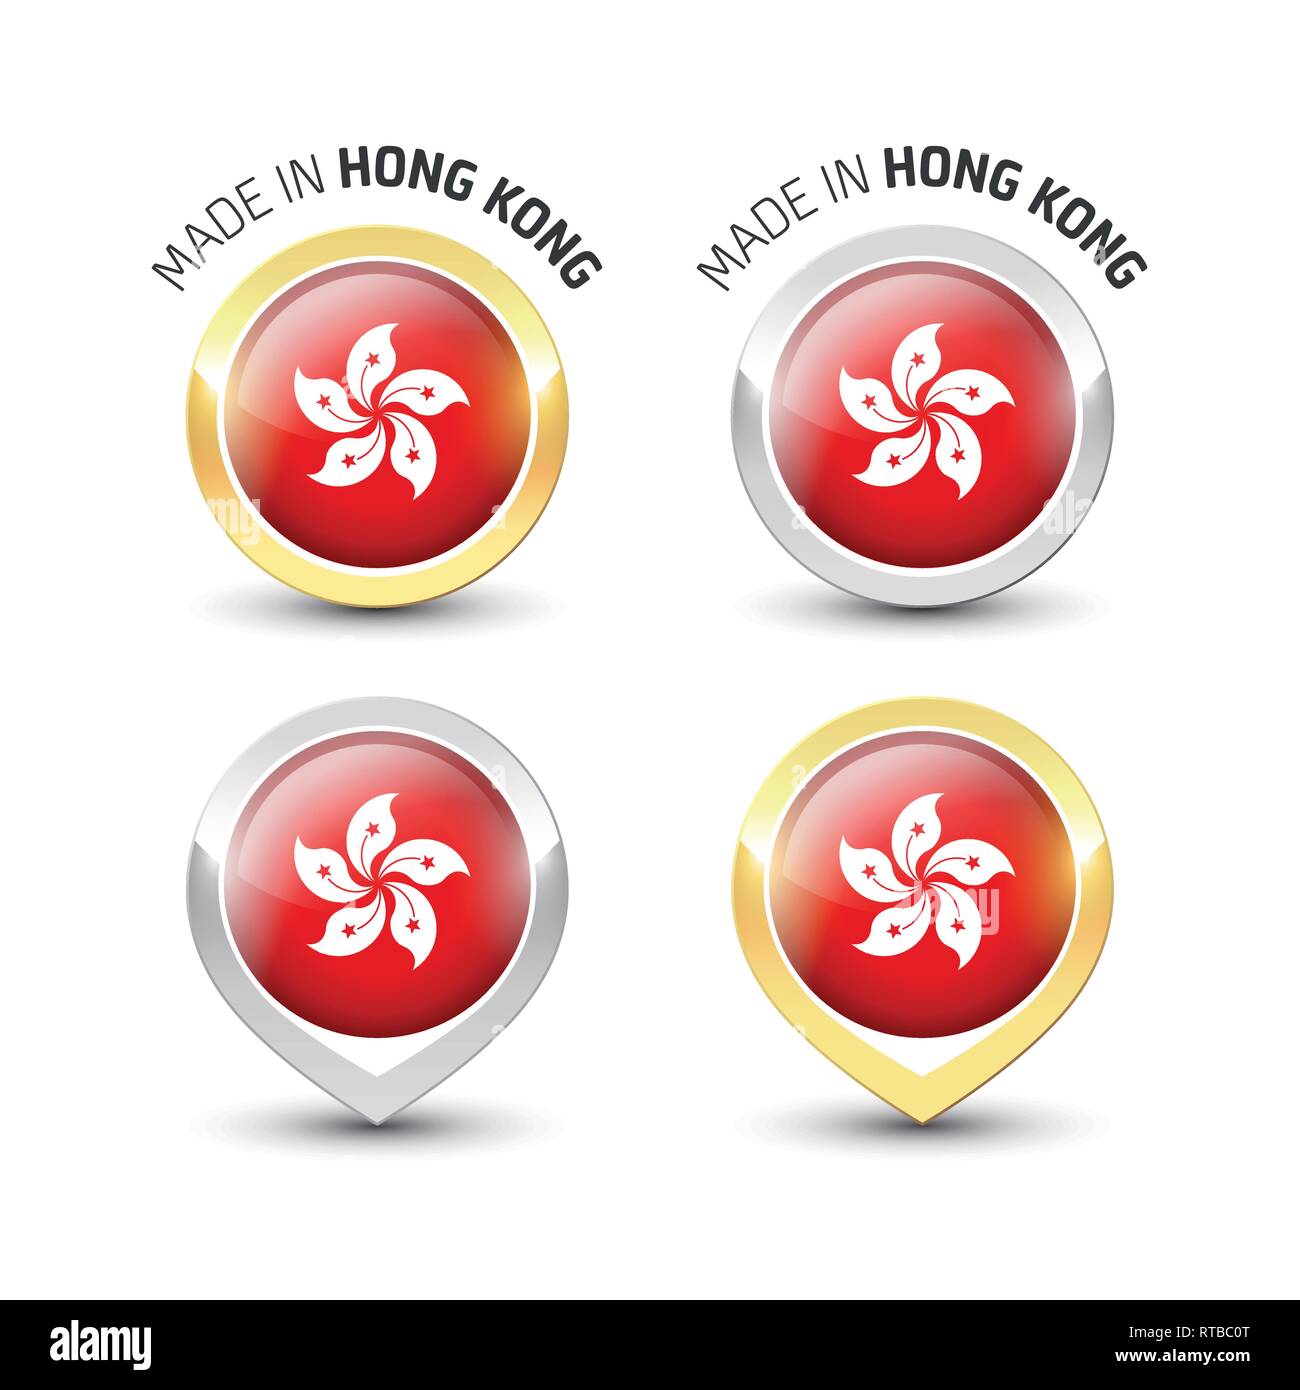 Fait à Hong Kong - label garanti avec le drapeau de Hong Kong l'intérieur de ronde des icônes d'or et d'argent. Illustration de Vecteur